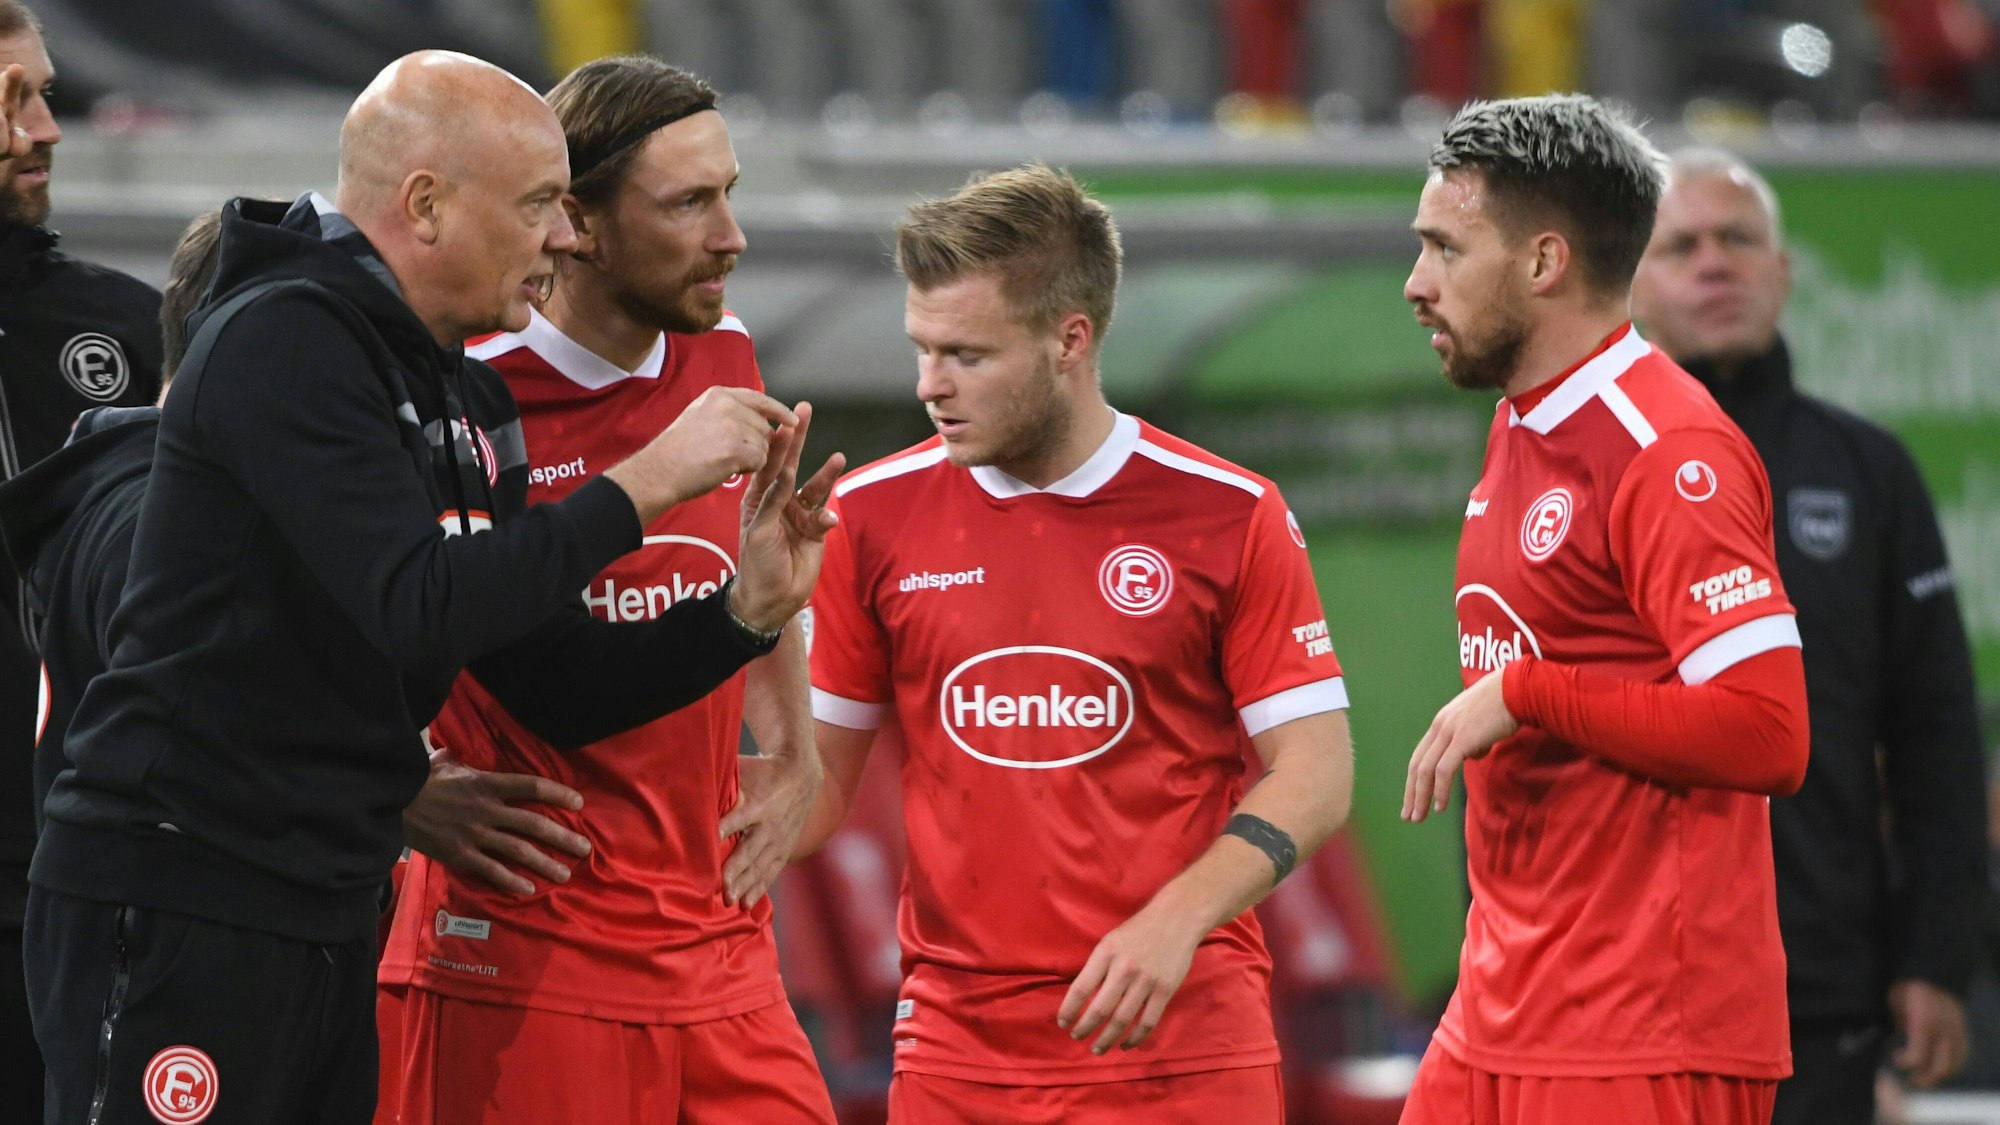 Fortuna Düsseldorfs Cheftrainer Uwe Rösler spricht an der Seitenlinie mit den Spielern Adam Bodzek, Jean Zimmer und Thomas Pledl.